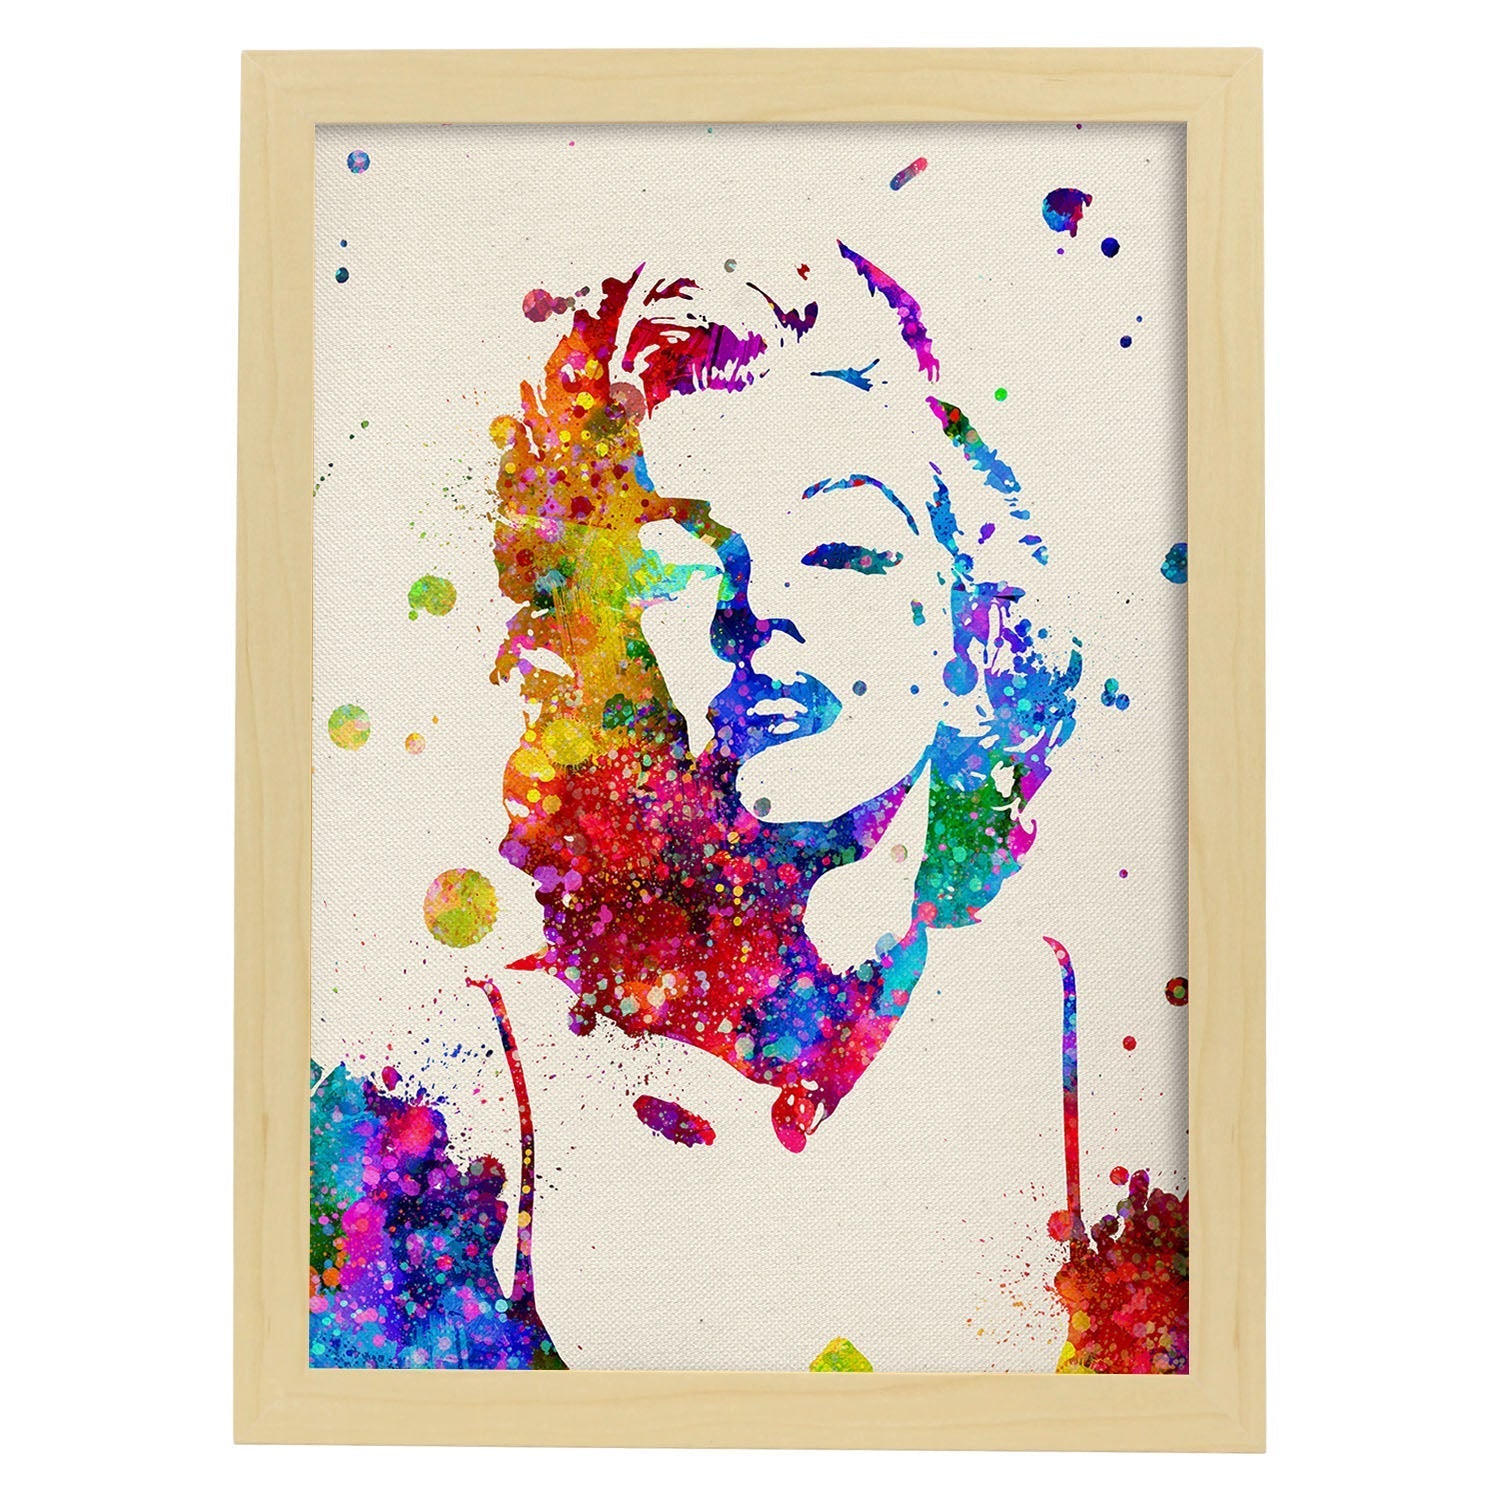 Poster imagen de Marilyn Monroe. Posters con diseño acuarela de famosos, actores, músicos-Artwork-Nacnic-A4-Marco Madera clara-Nacnic Estudio SL